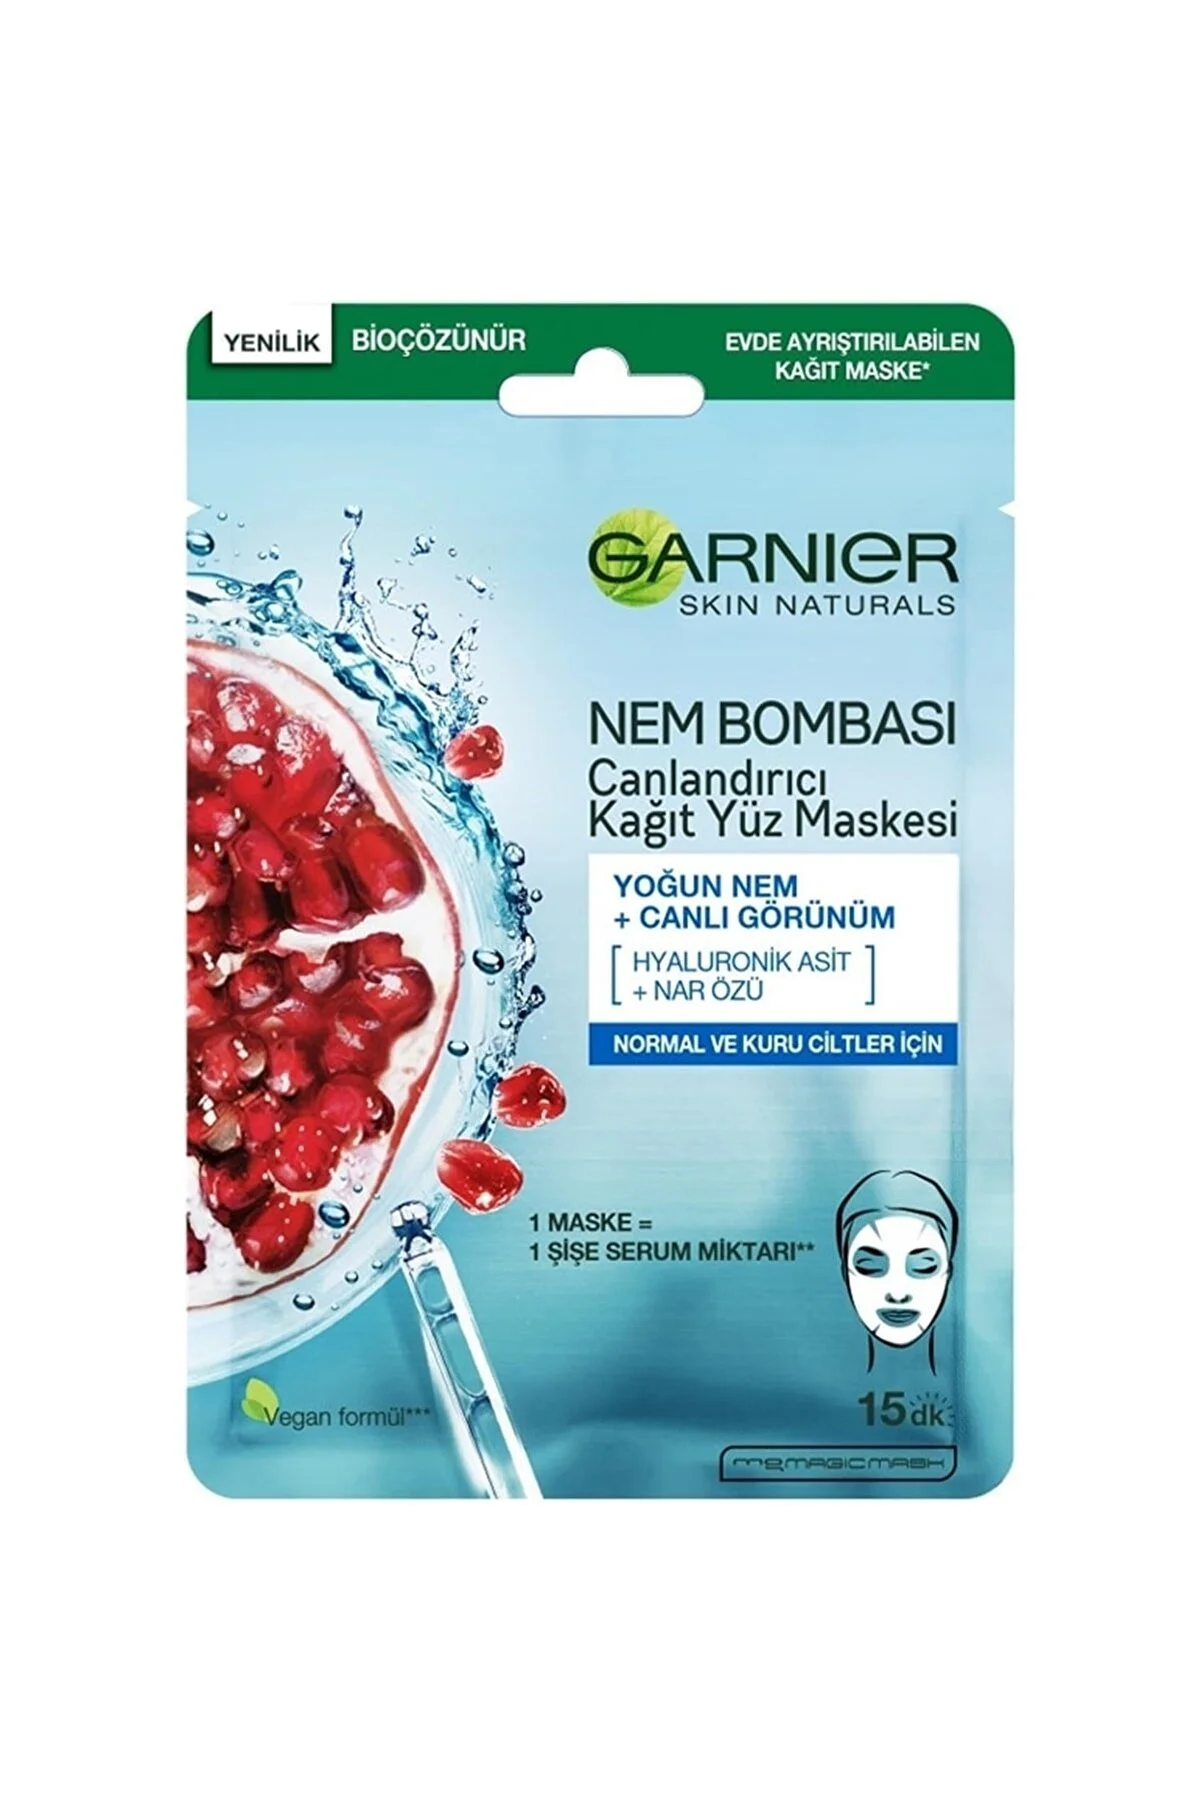 Garnier - Garnier Nem Bombası Canlandırıcı Kağıt Yüz Maskesi 28 g